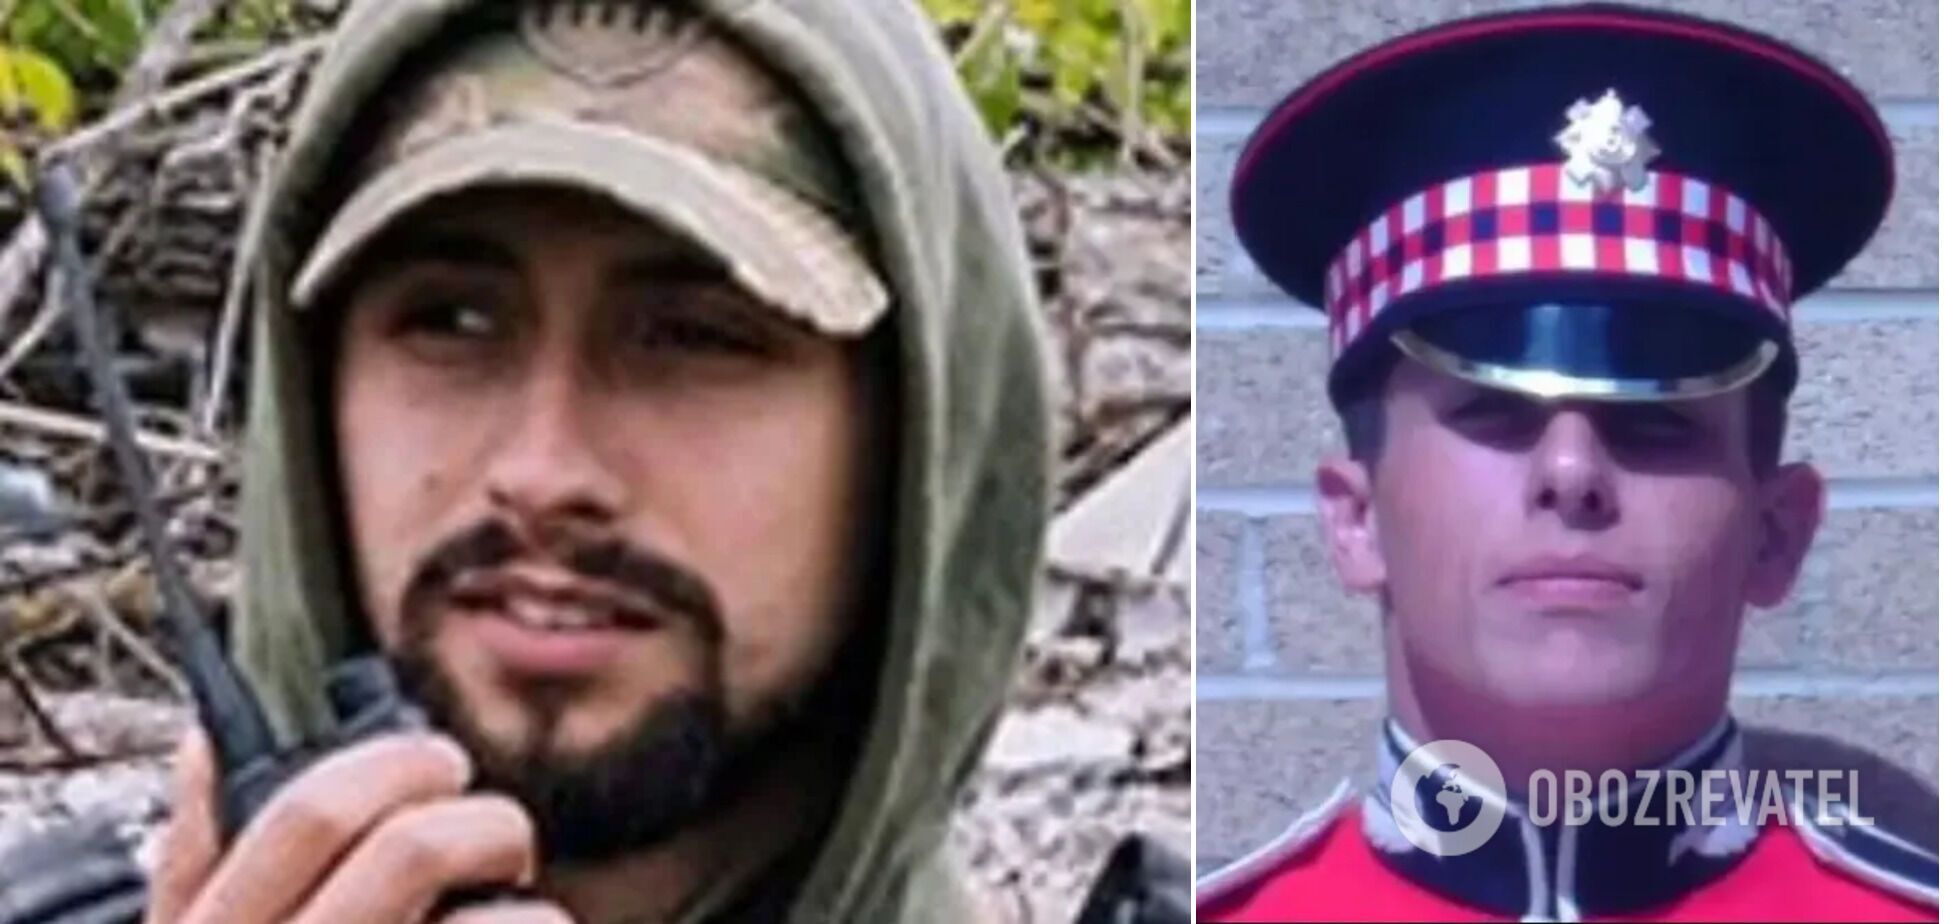 Мог быть убит другим британцем: новые детали гибели добровольца Чедвика, найденного мертвым в водоеме в Украине